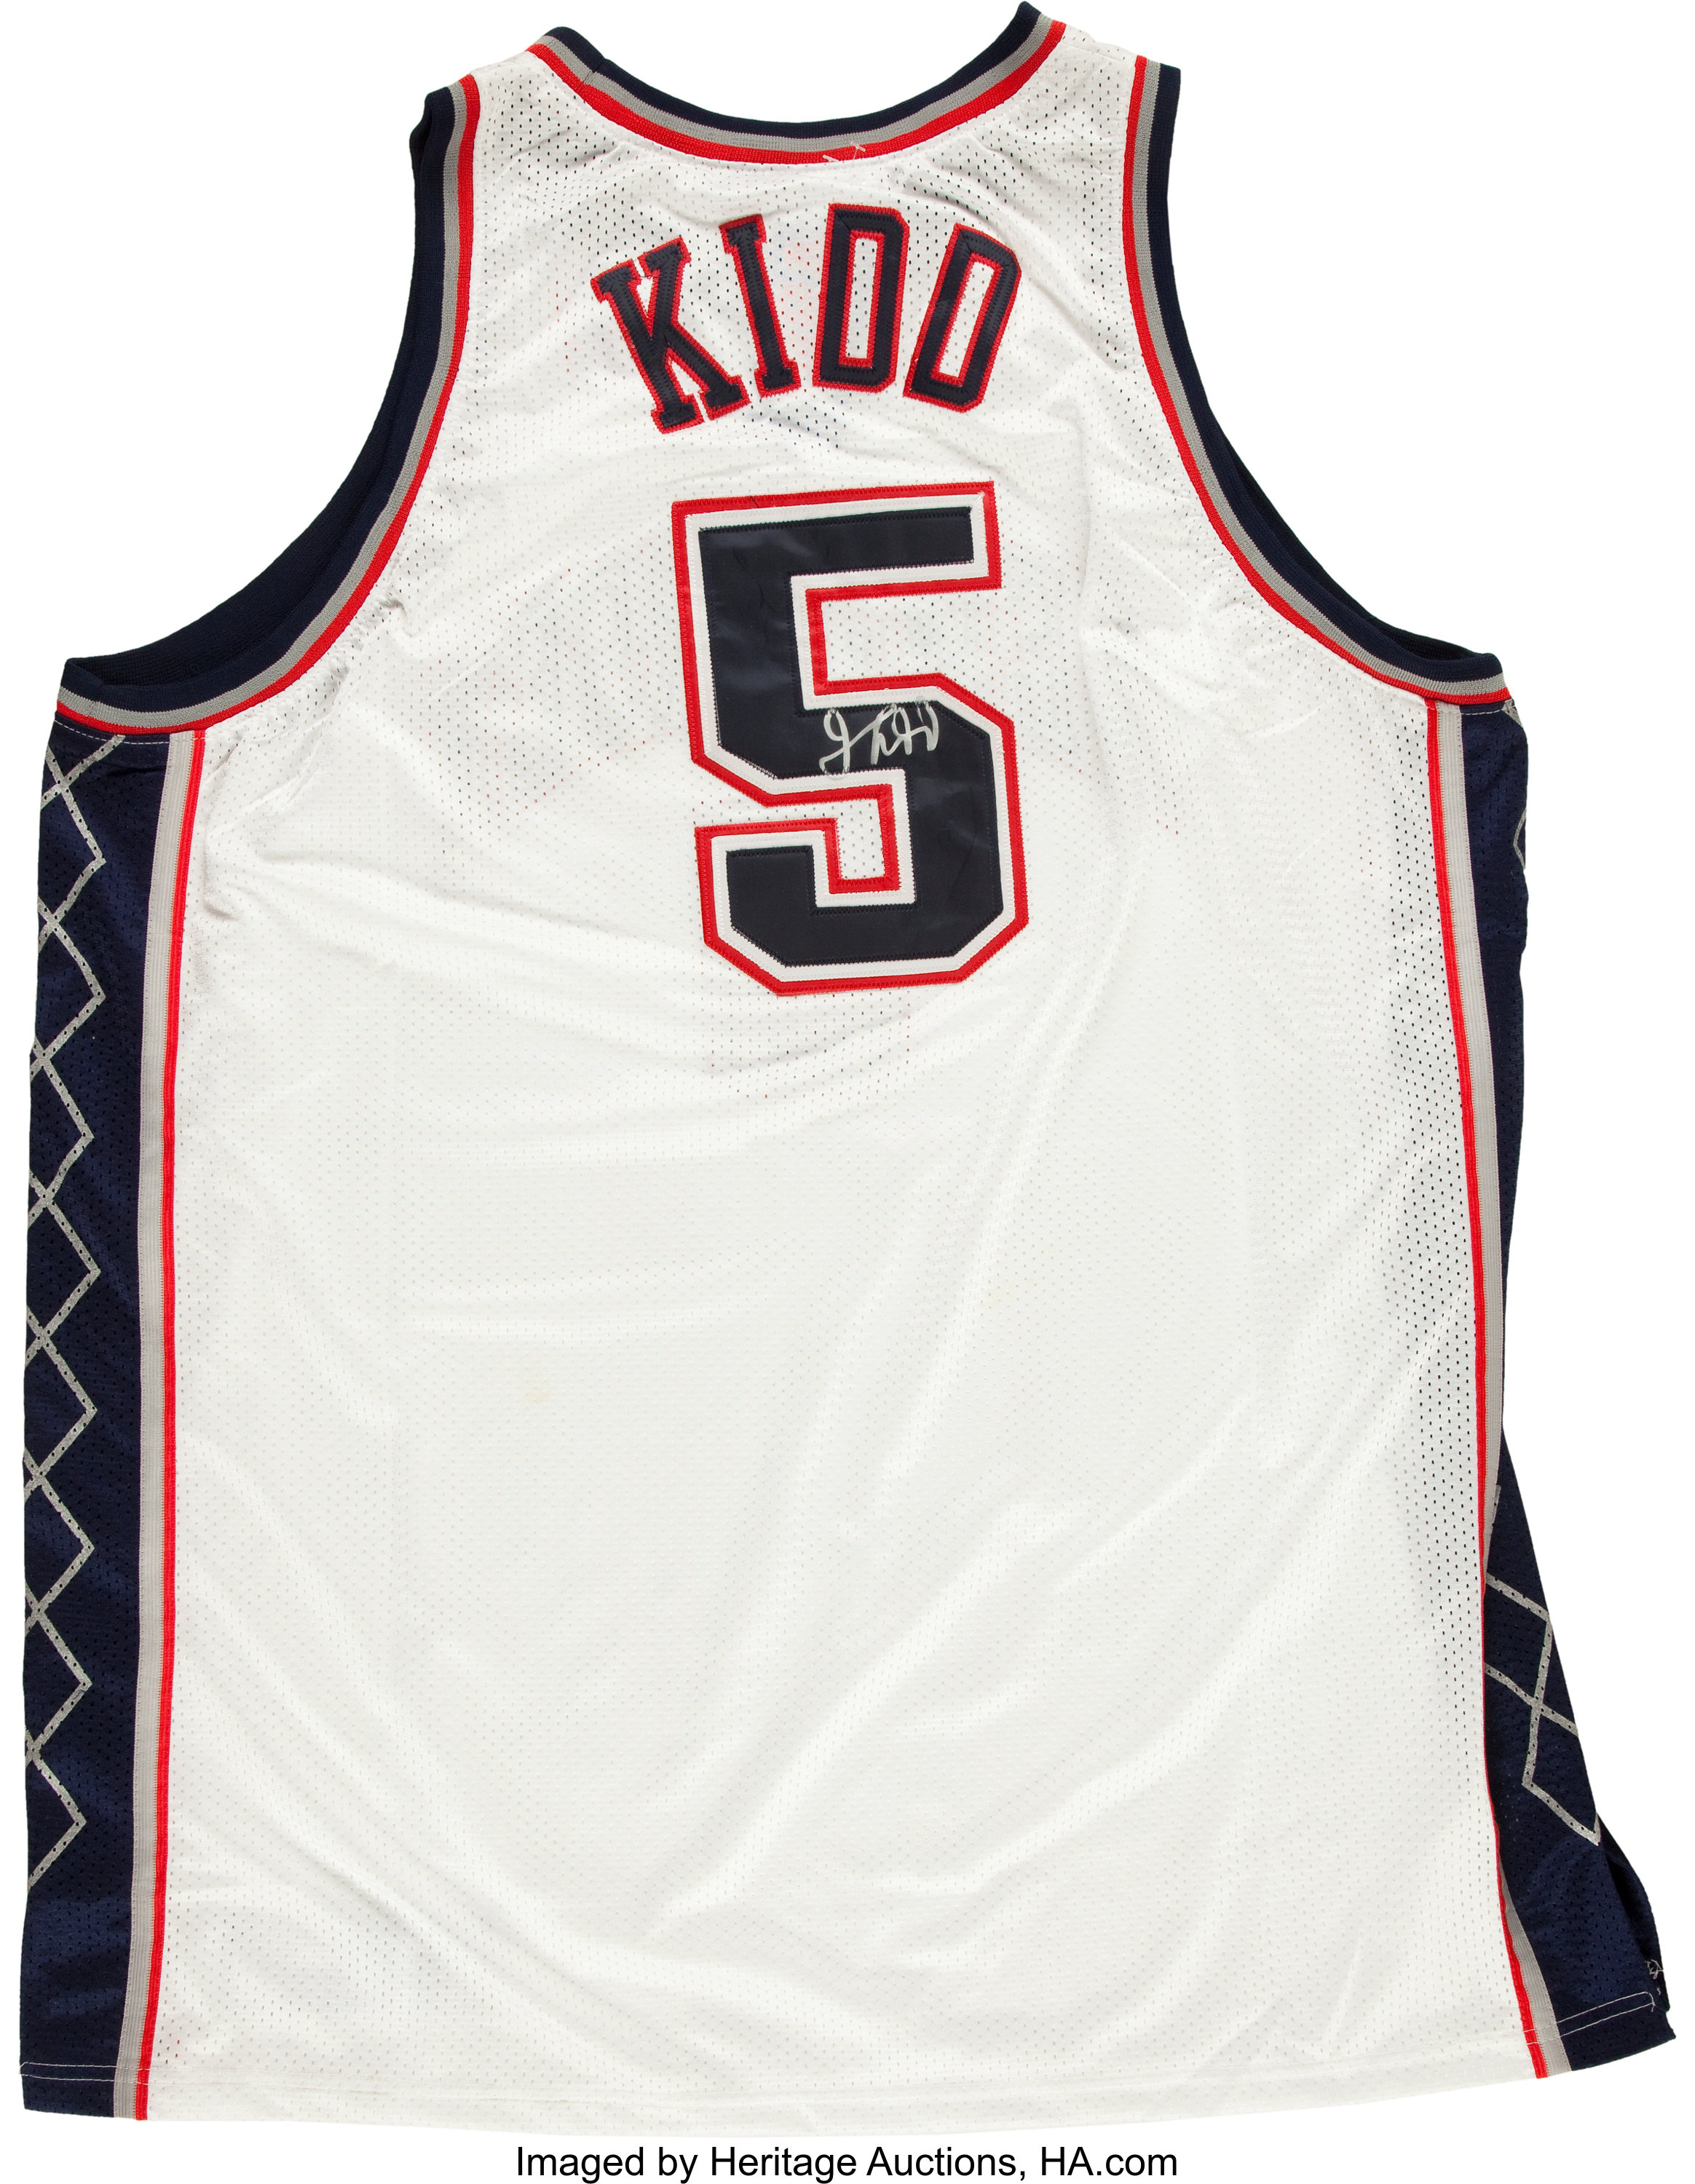 Jason Kidd Signed New Jersey Nets Jersey. Basketball